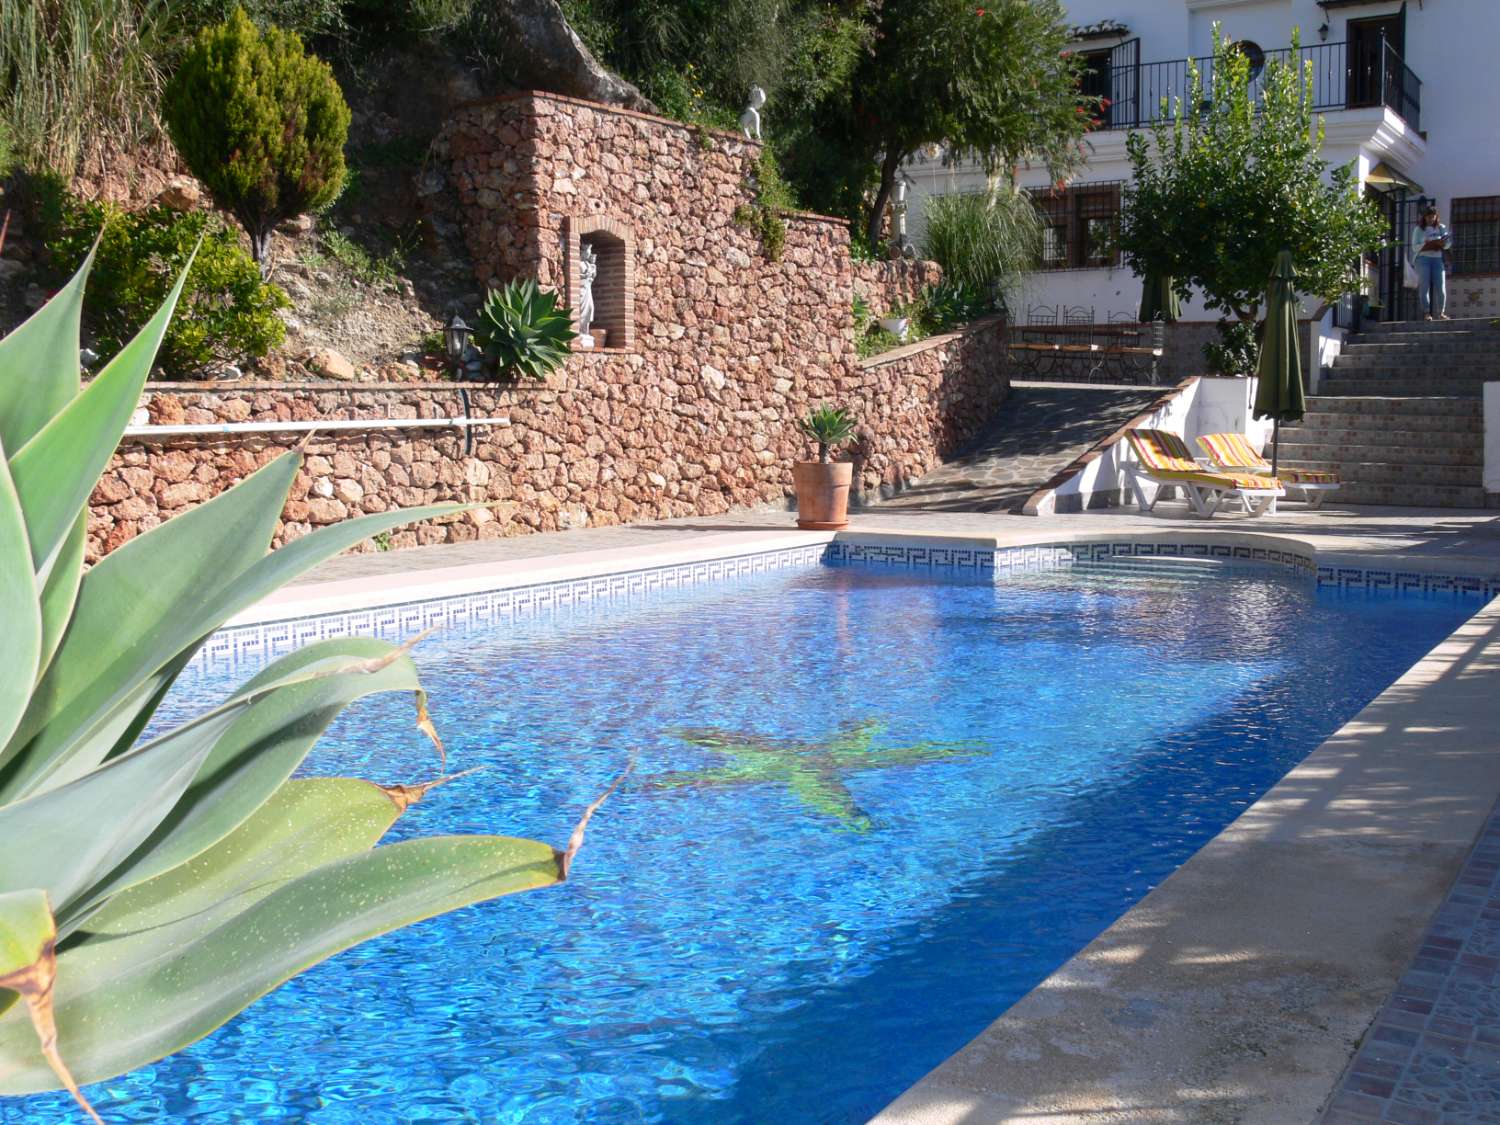 Kaunis hiljainen talo Frigilianassa, jossa on kaunis puutarha ja oma uima-allas